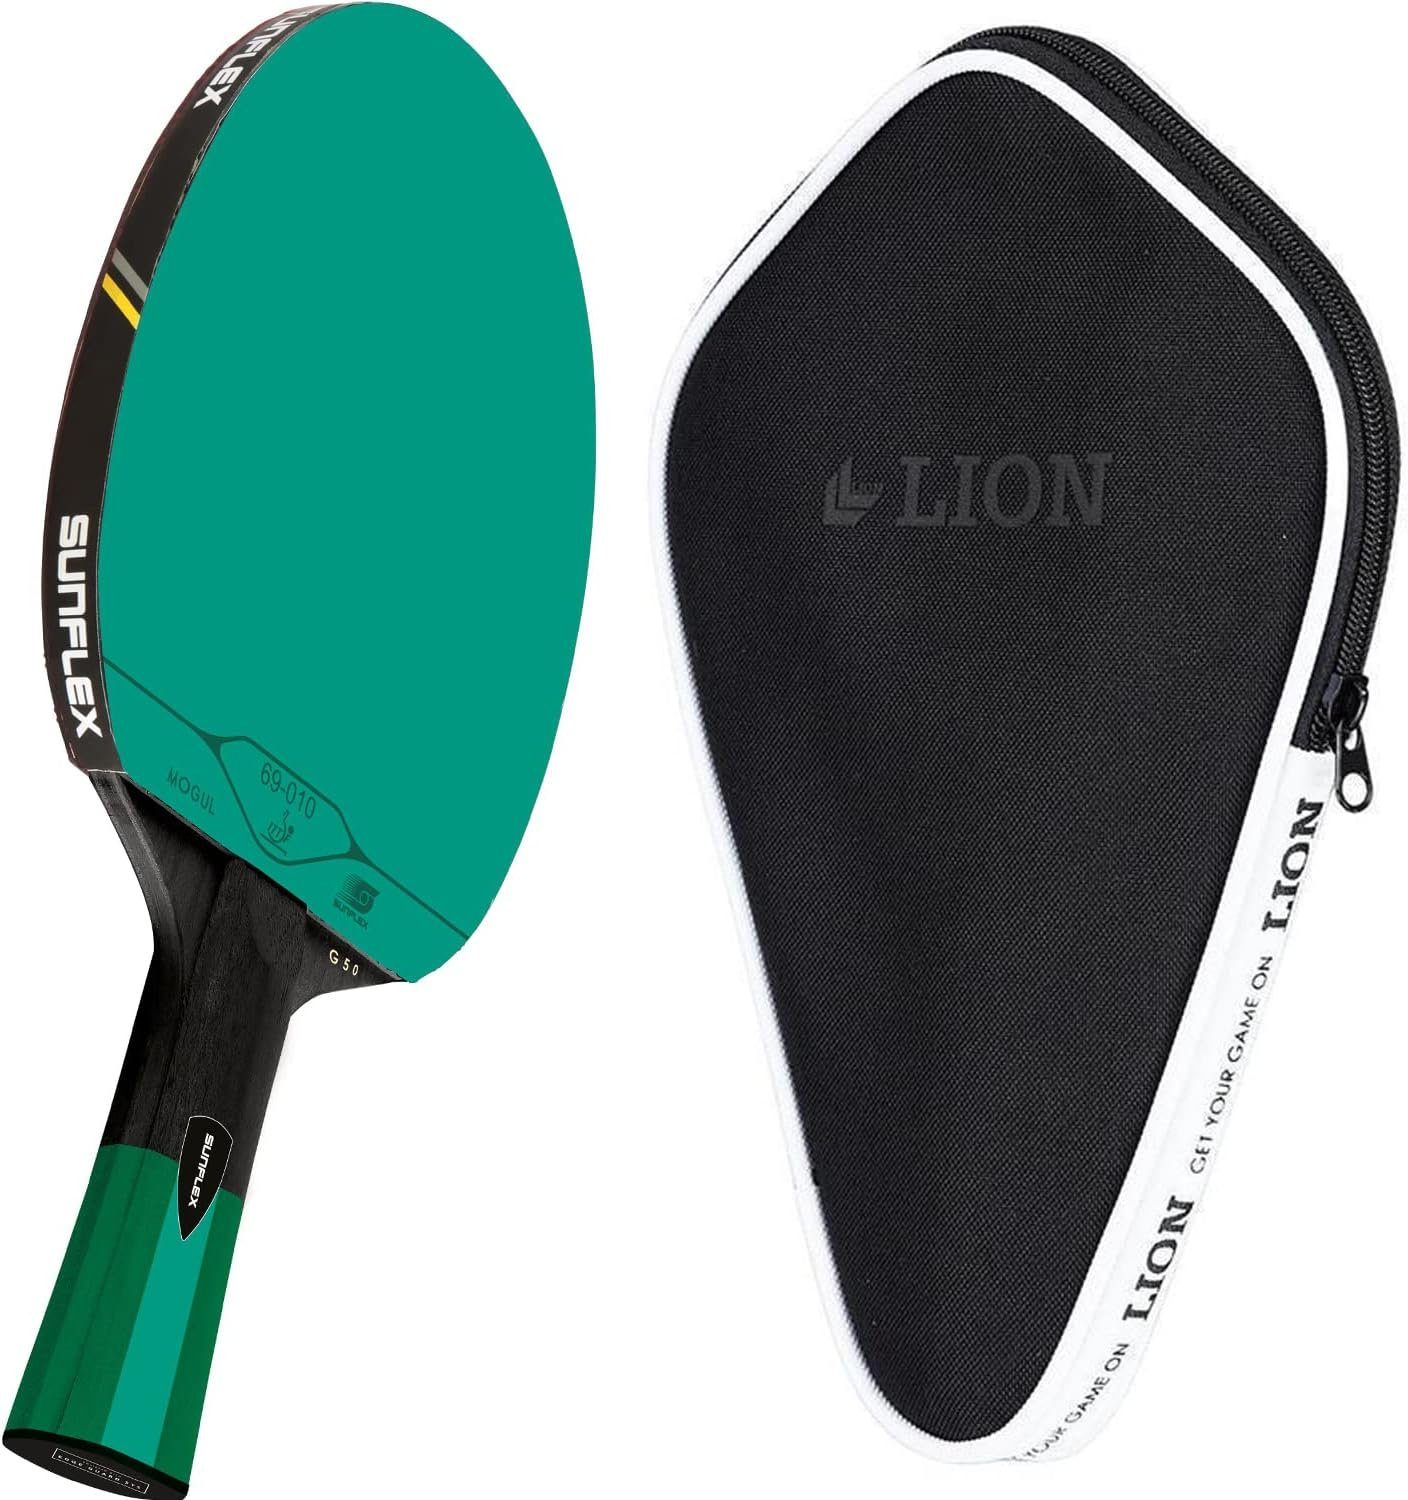 Sunflex Tischtennisschläger G50 + Tischtennishülle Cover, Tischtennis Schläger Set Tischtennisset Table Tennis Bat Racket